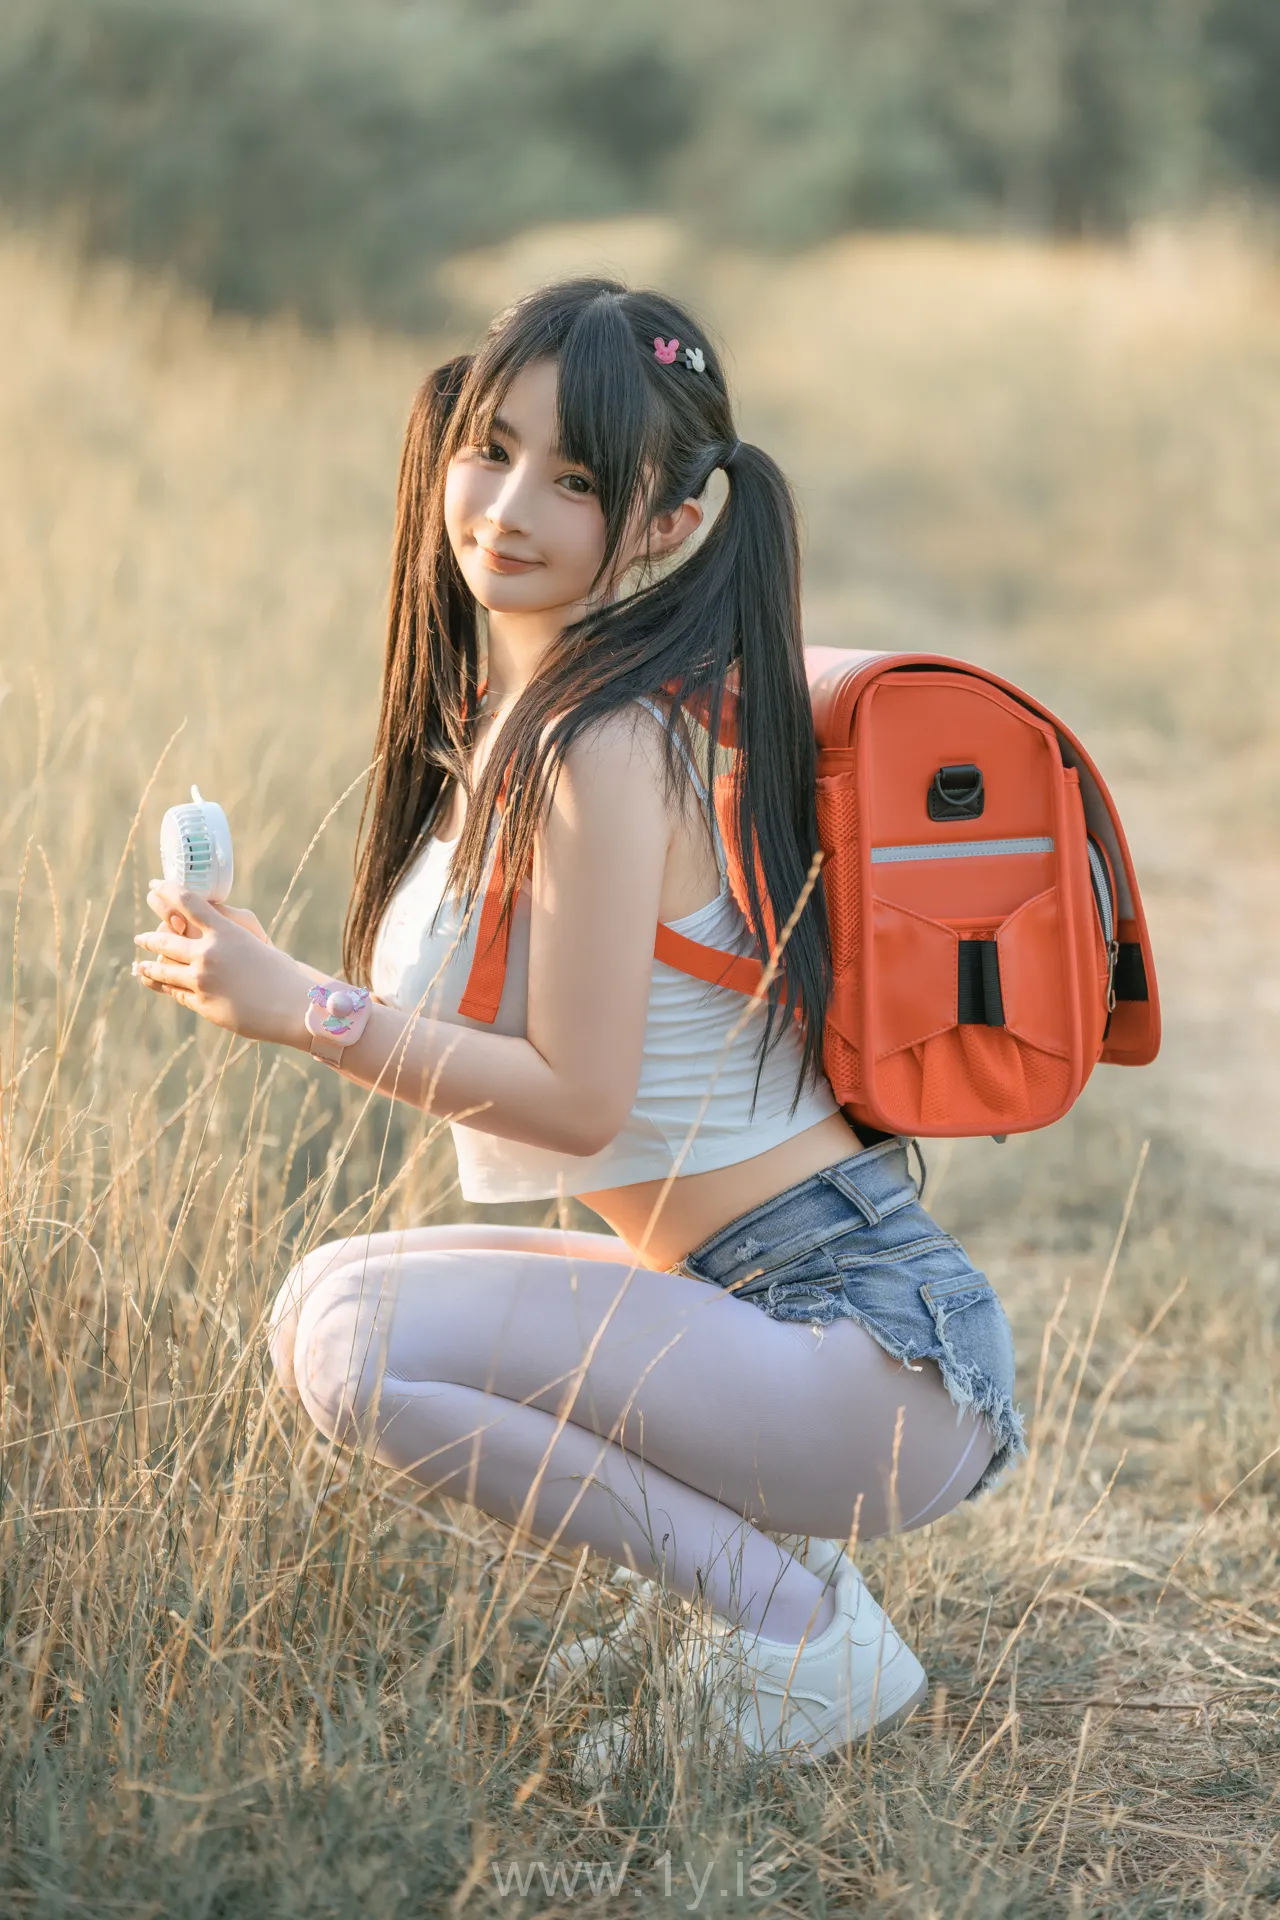 桜井宁宁 NO.055  Sensual young lady carrying a red backpack